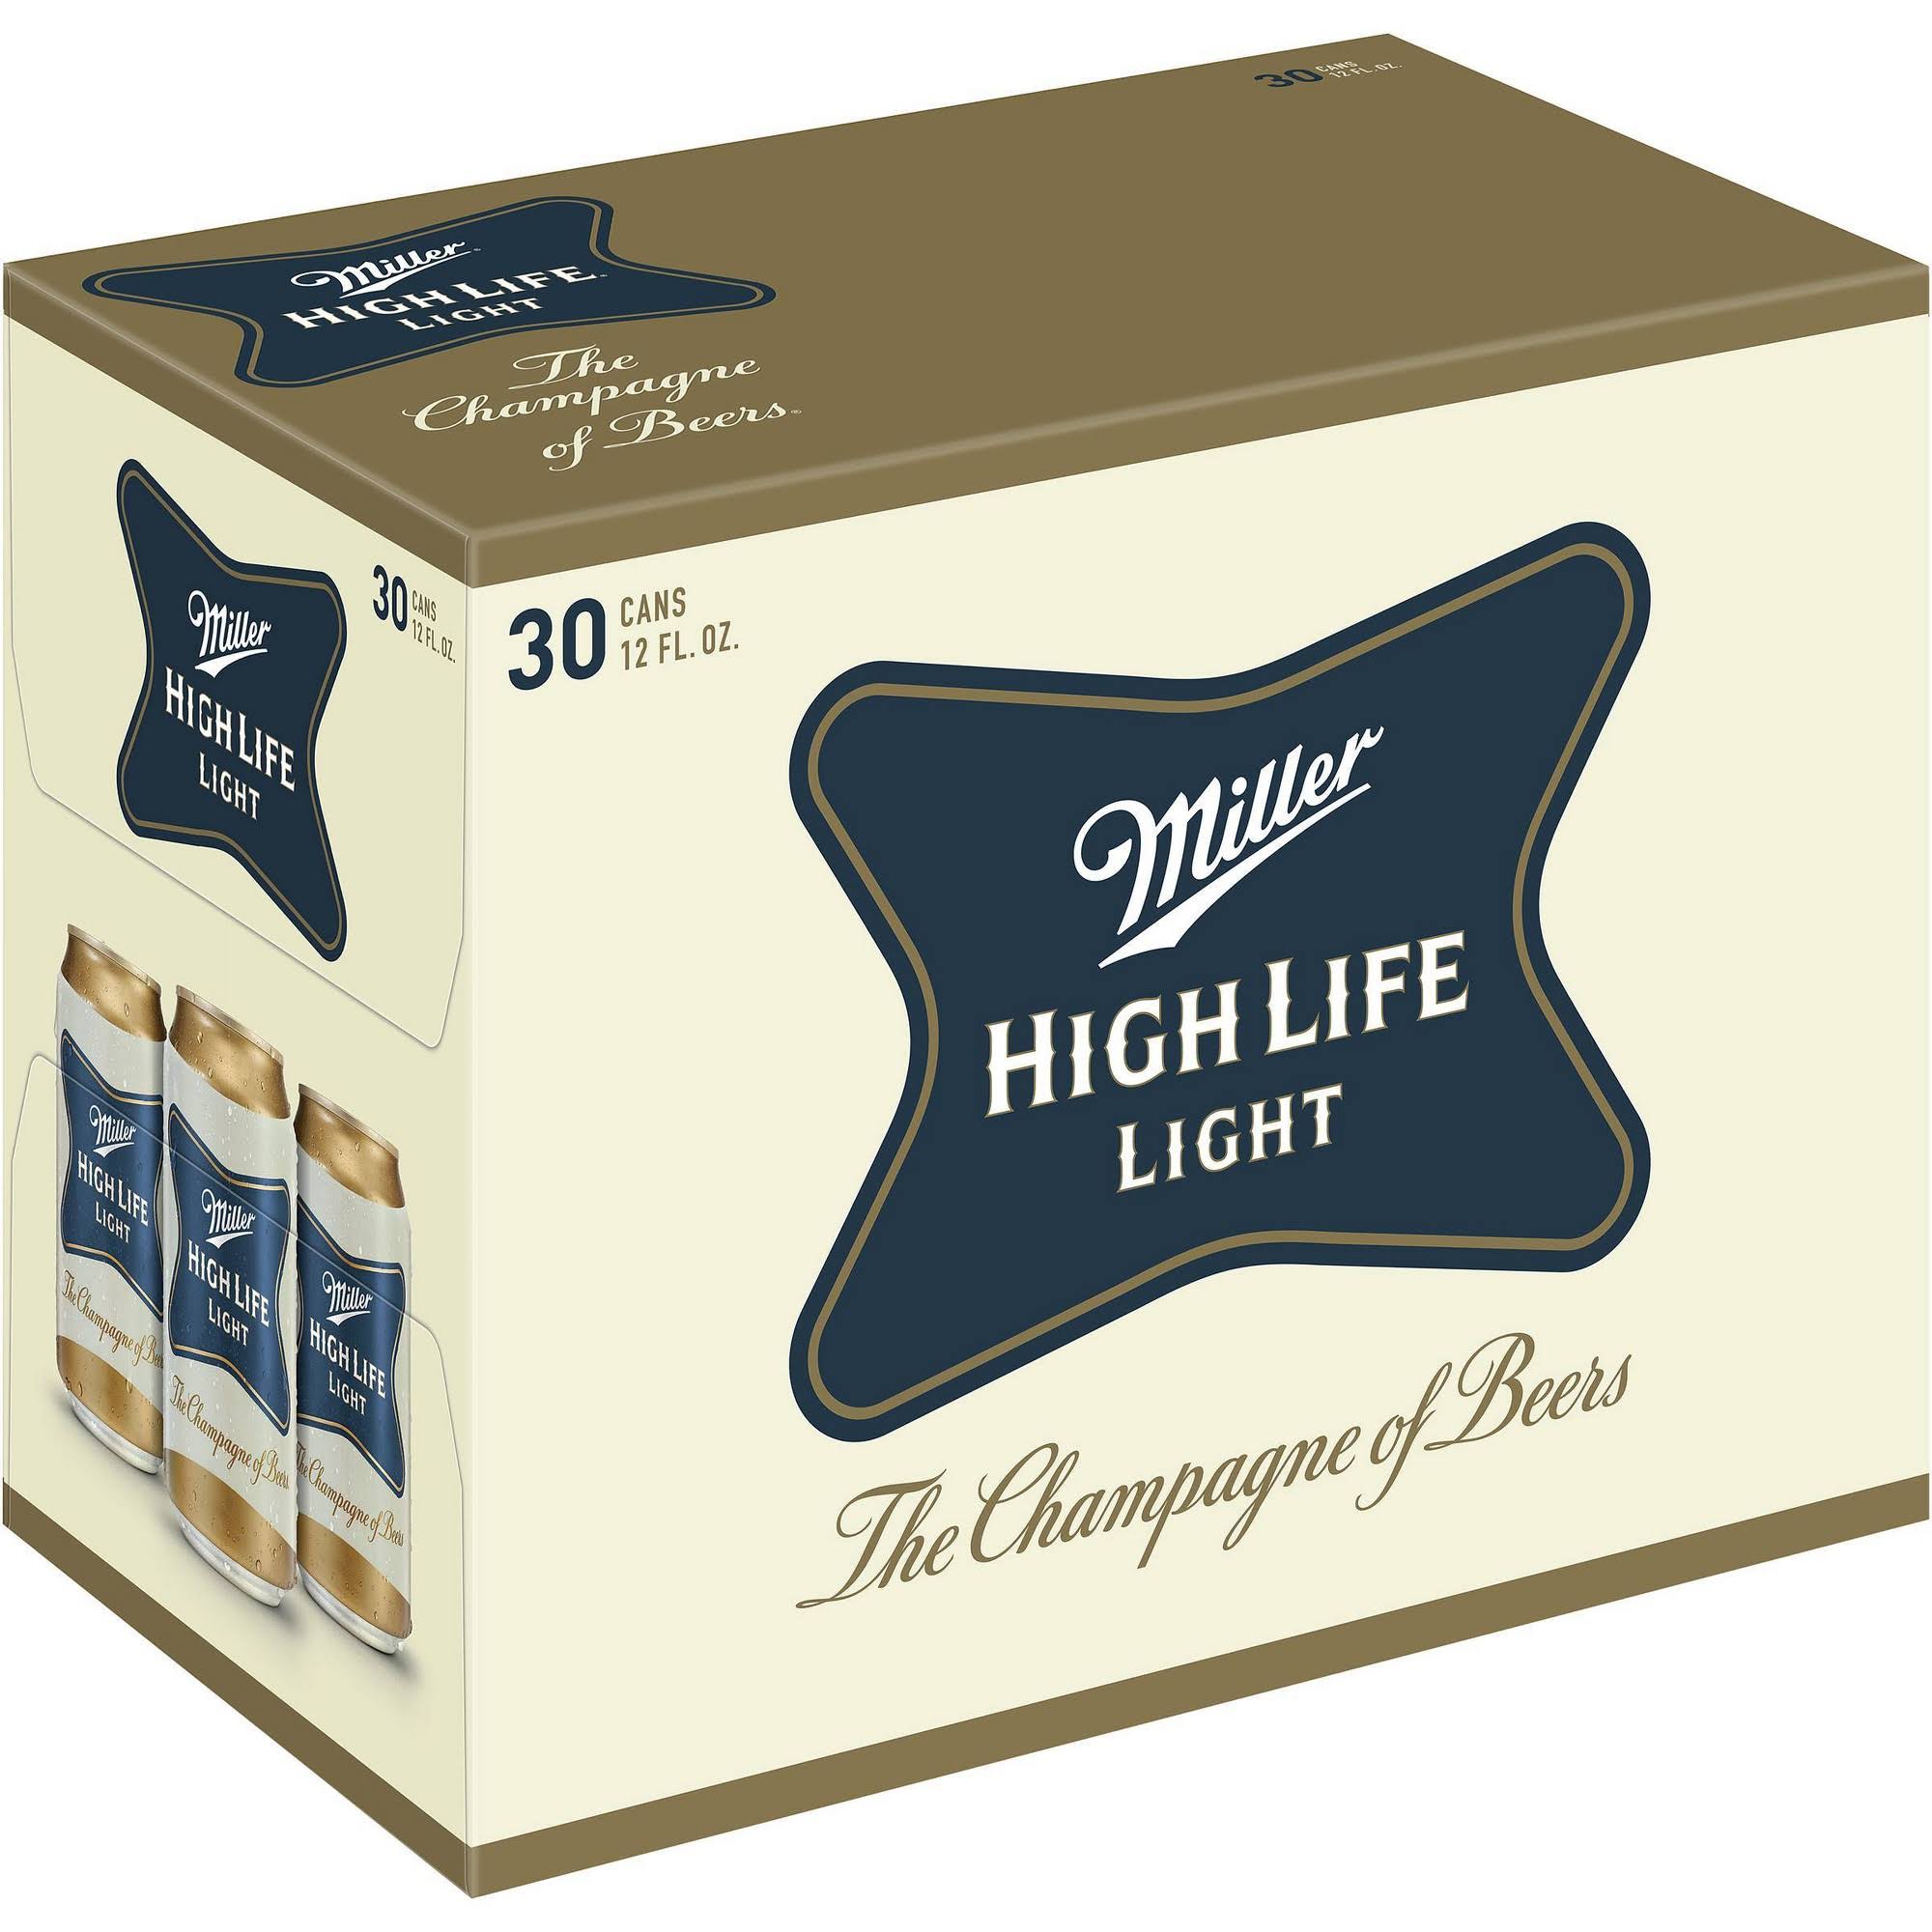 Miller High Life Beer, Light - 30 pack, 12 fl oz cans